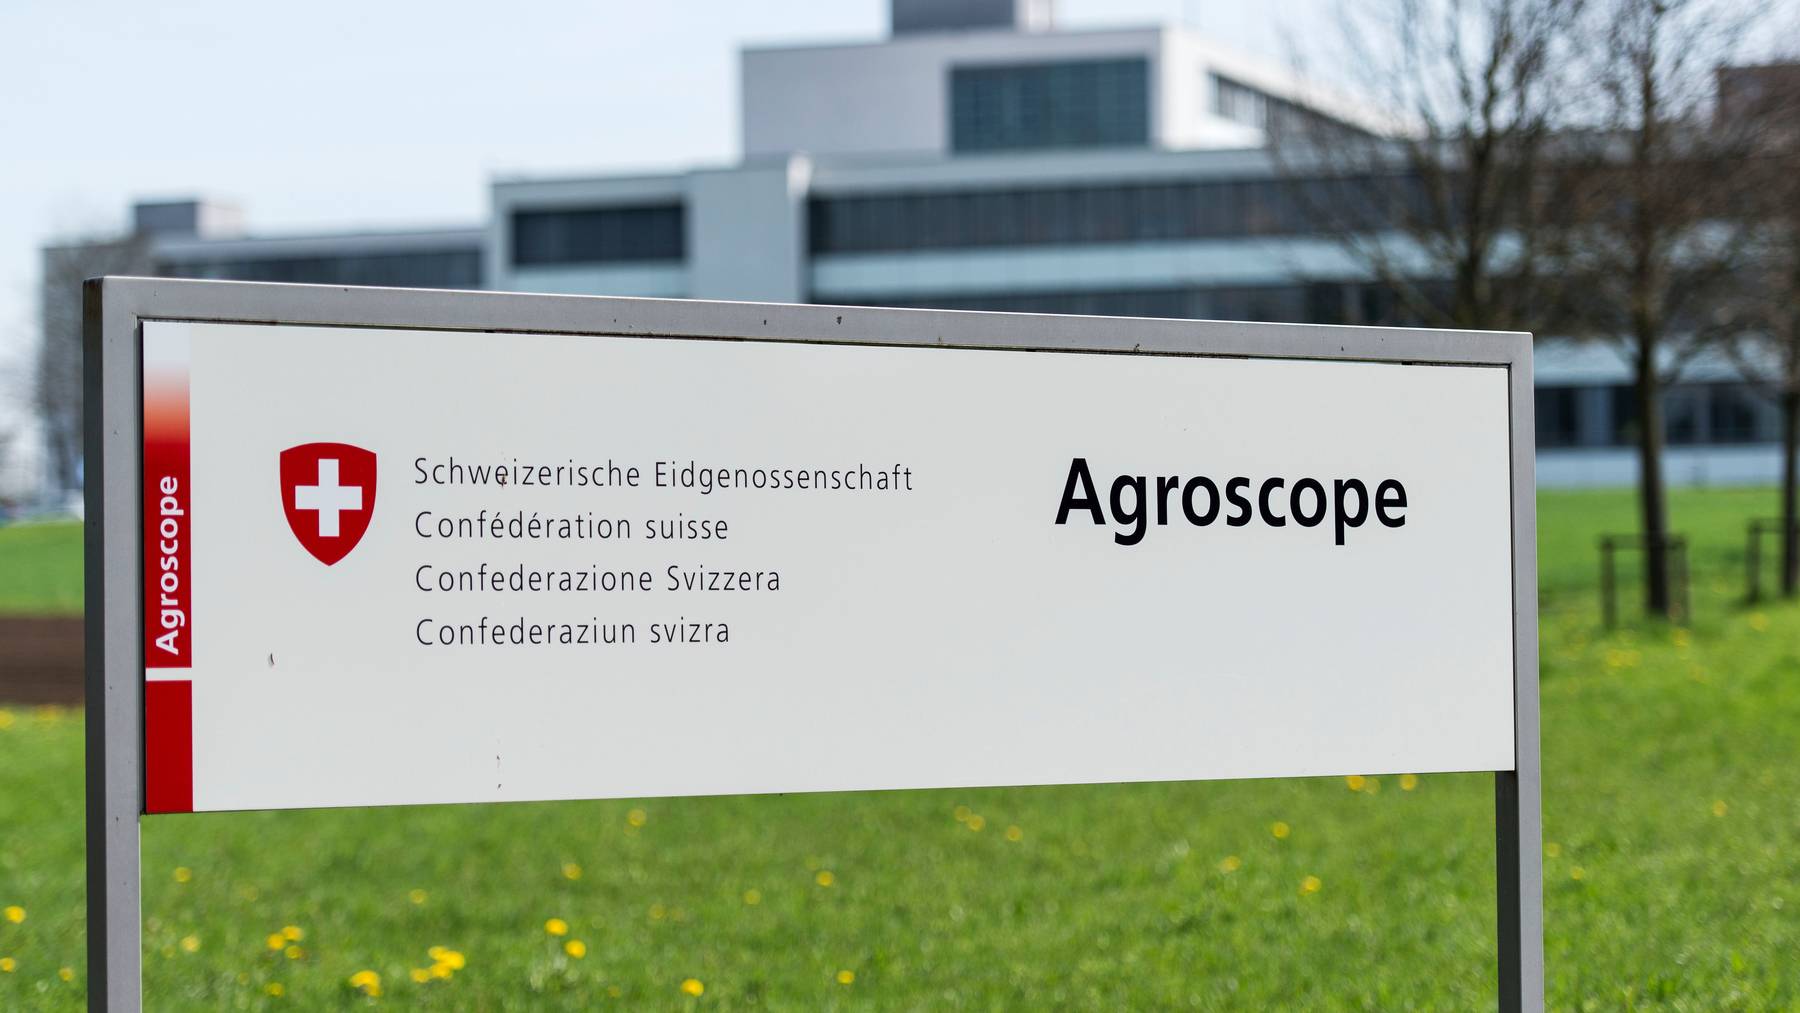 Die Reorganisation von Agroscope ist umstritten. Nun findet der Bundesrat einen Kompromiss, der für einige Standorte dennoch schmerzhaft ist.